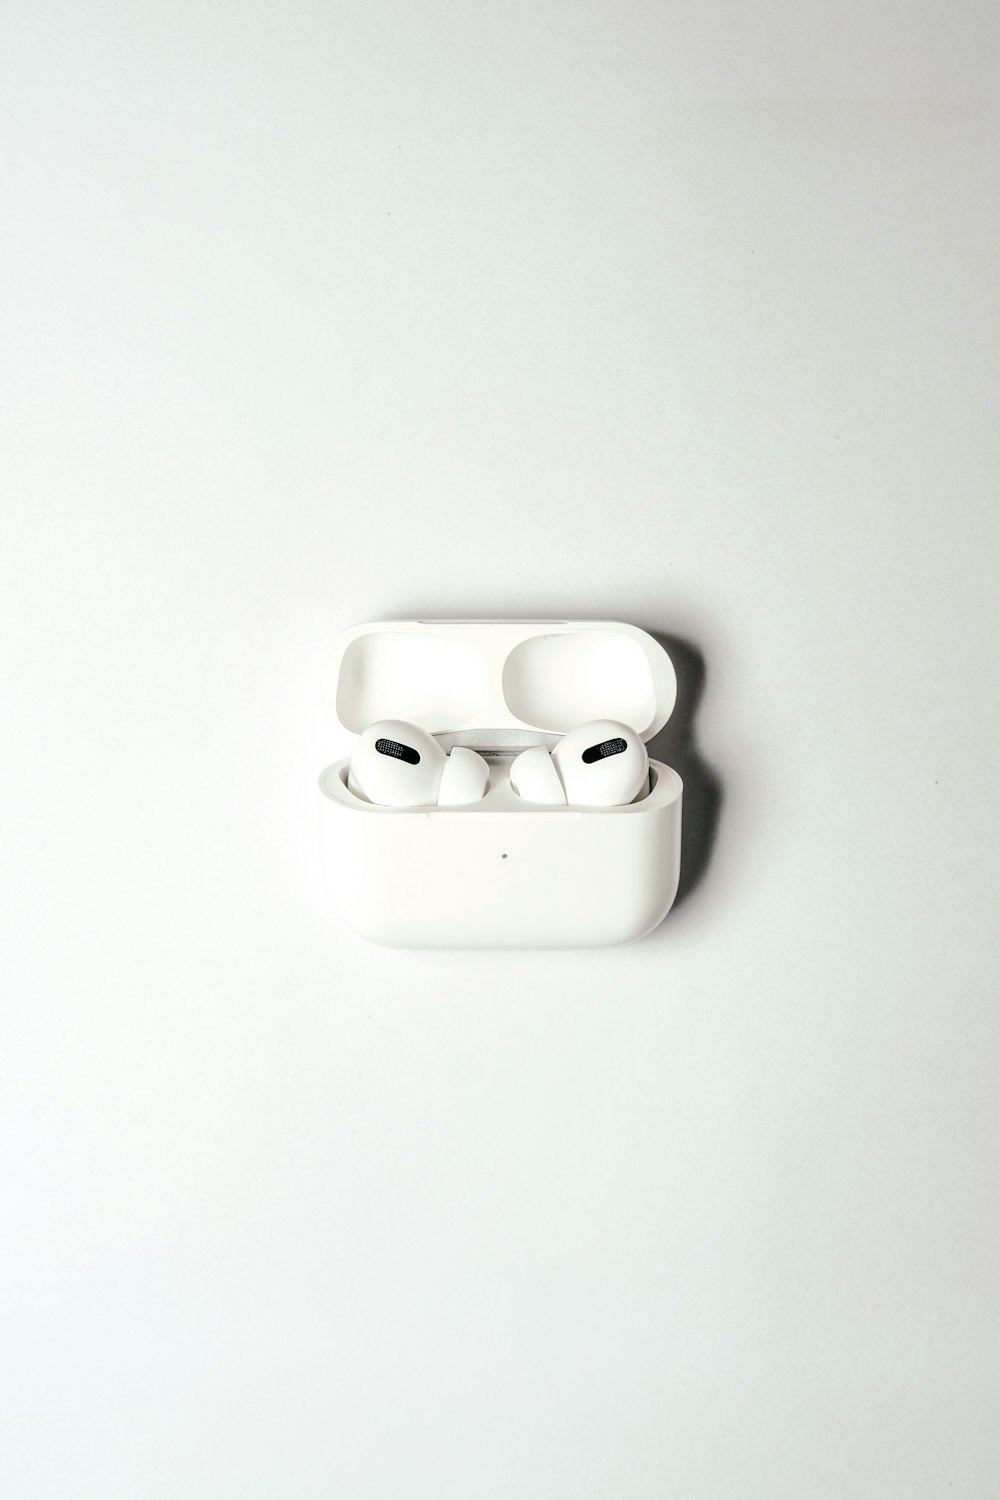 white apple earpods in white case